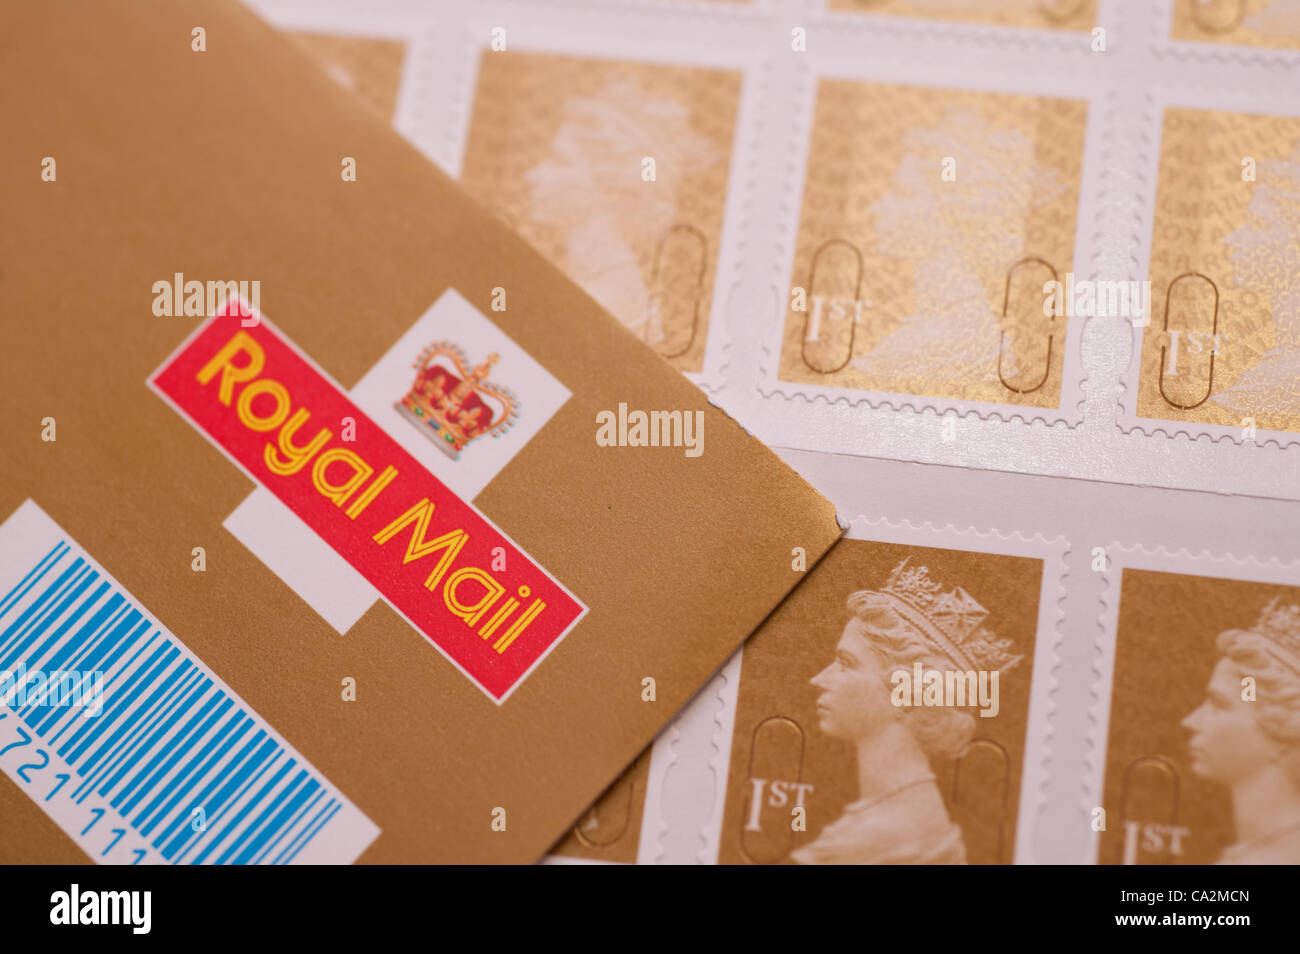 27 mars 2012 un timbre-poste de première classe va augmenter de 30  % dans le prix de 46p à 60p du 30 avril 2012 après le régulateur britannique allégé de contrôle des prix sur Royal Mail Banque D'Images